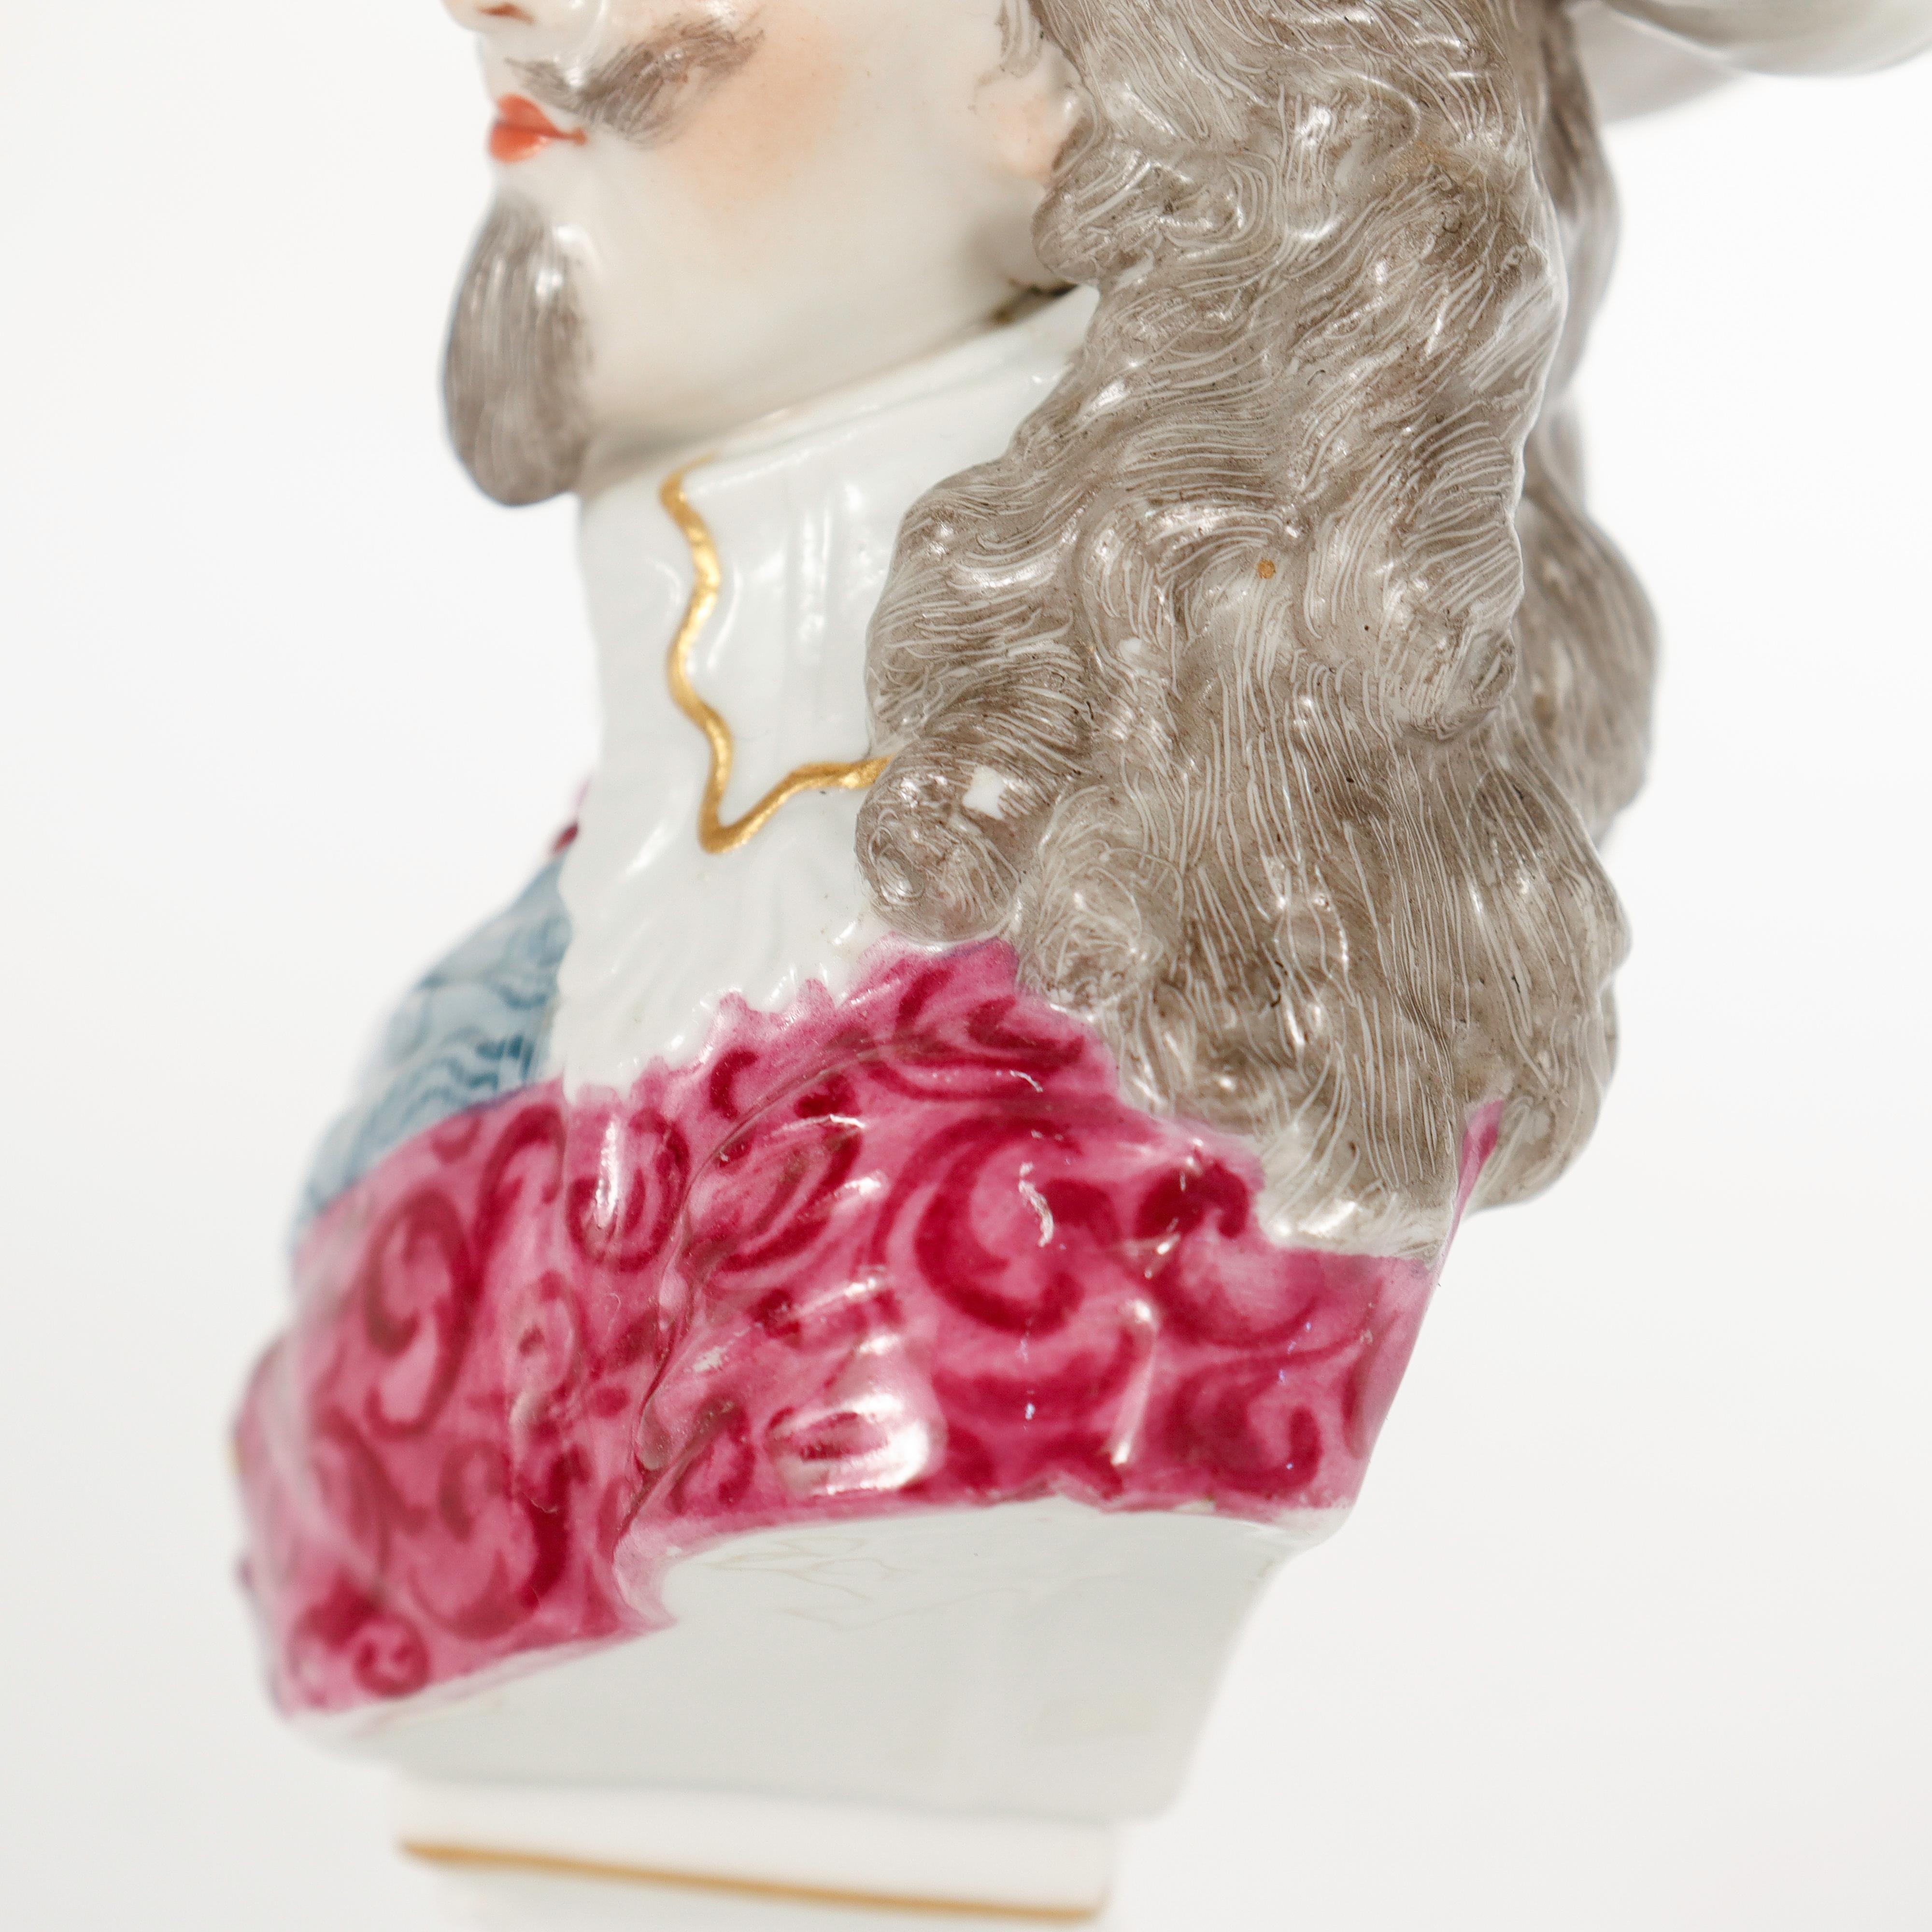 Antique Samson Porcelain Figurine of a Nobleman or Prince For Sale 13